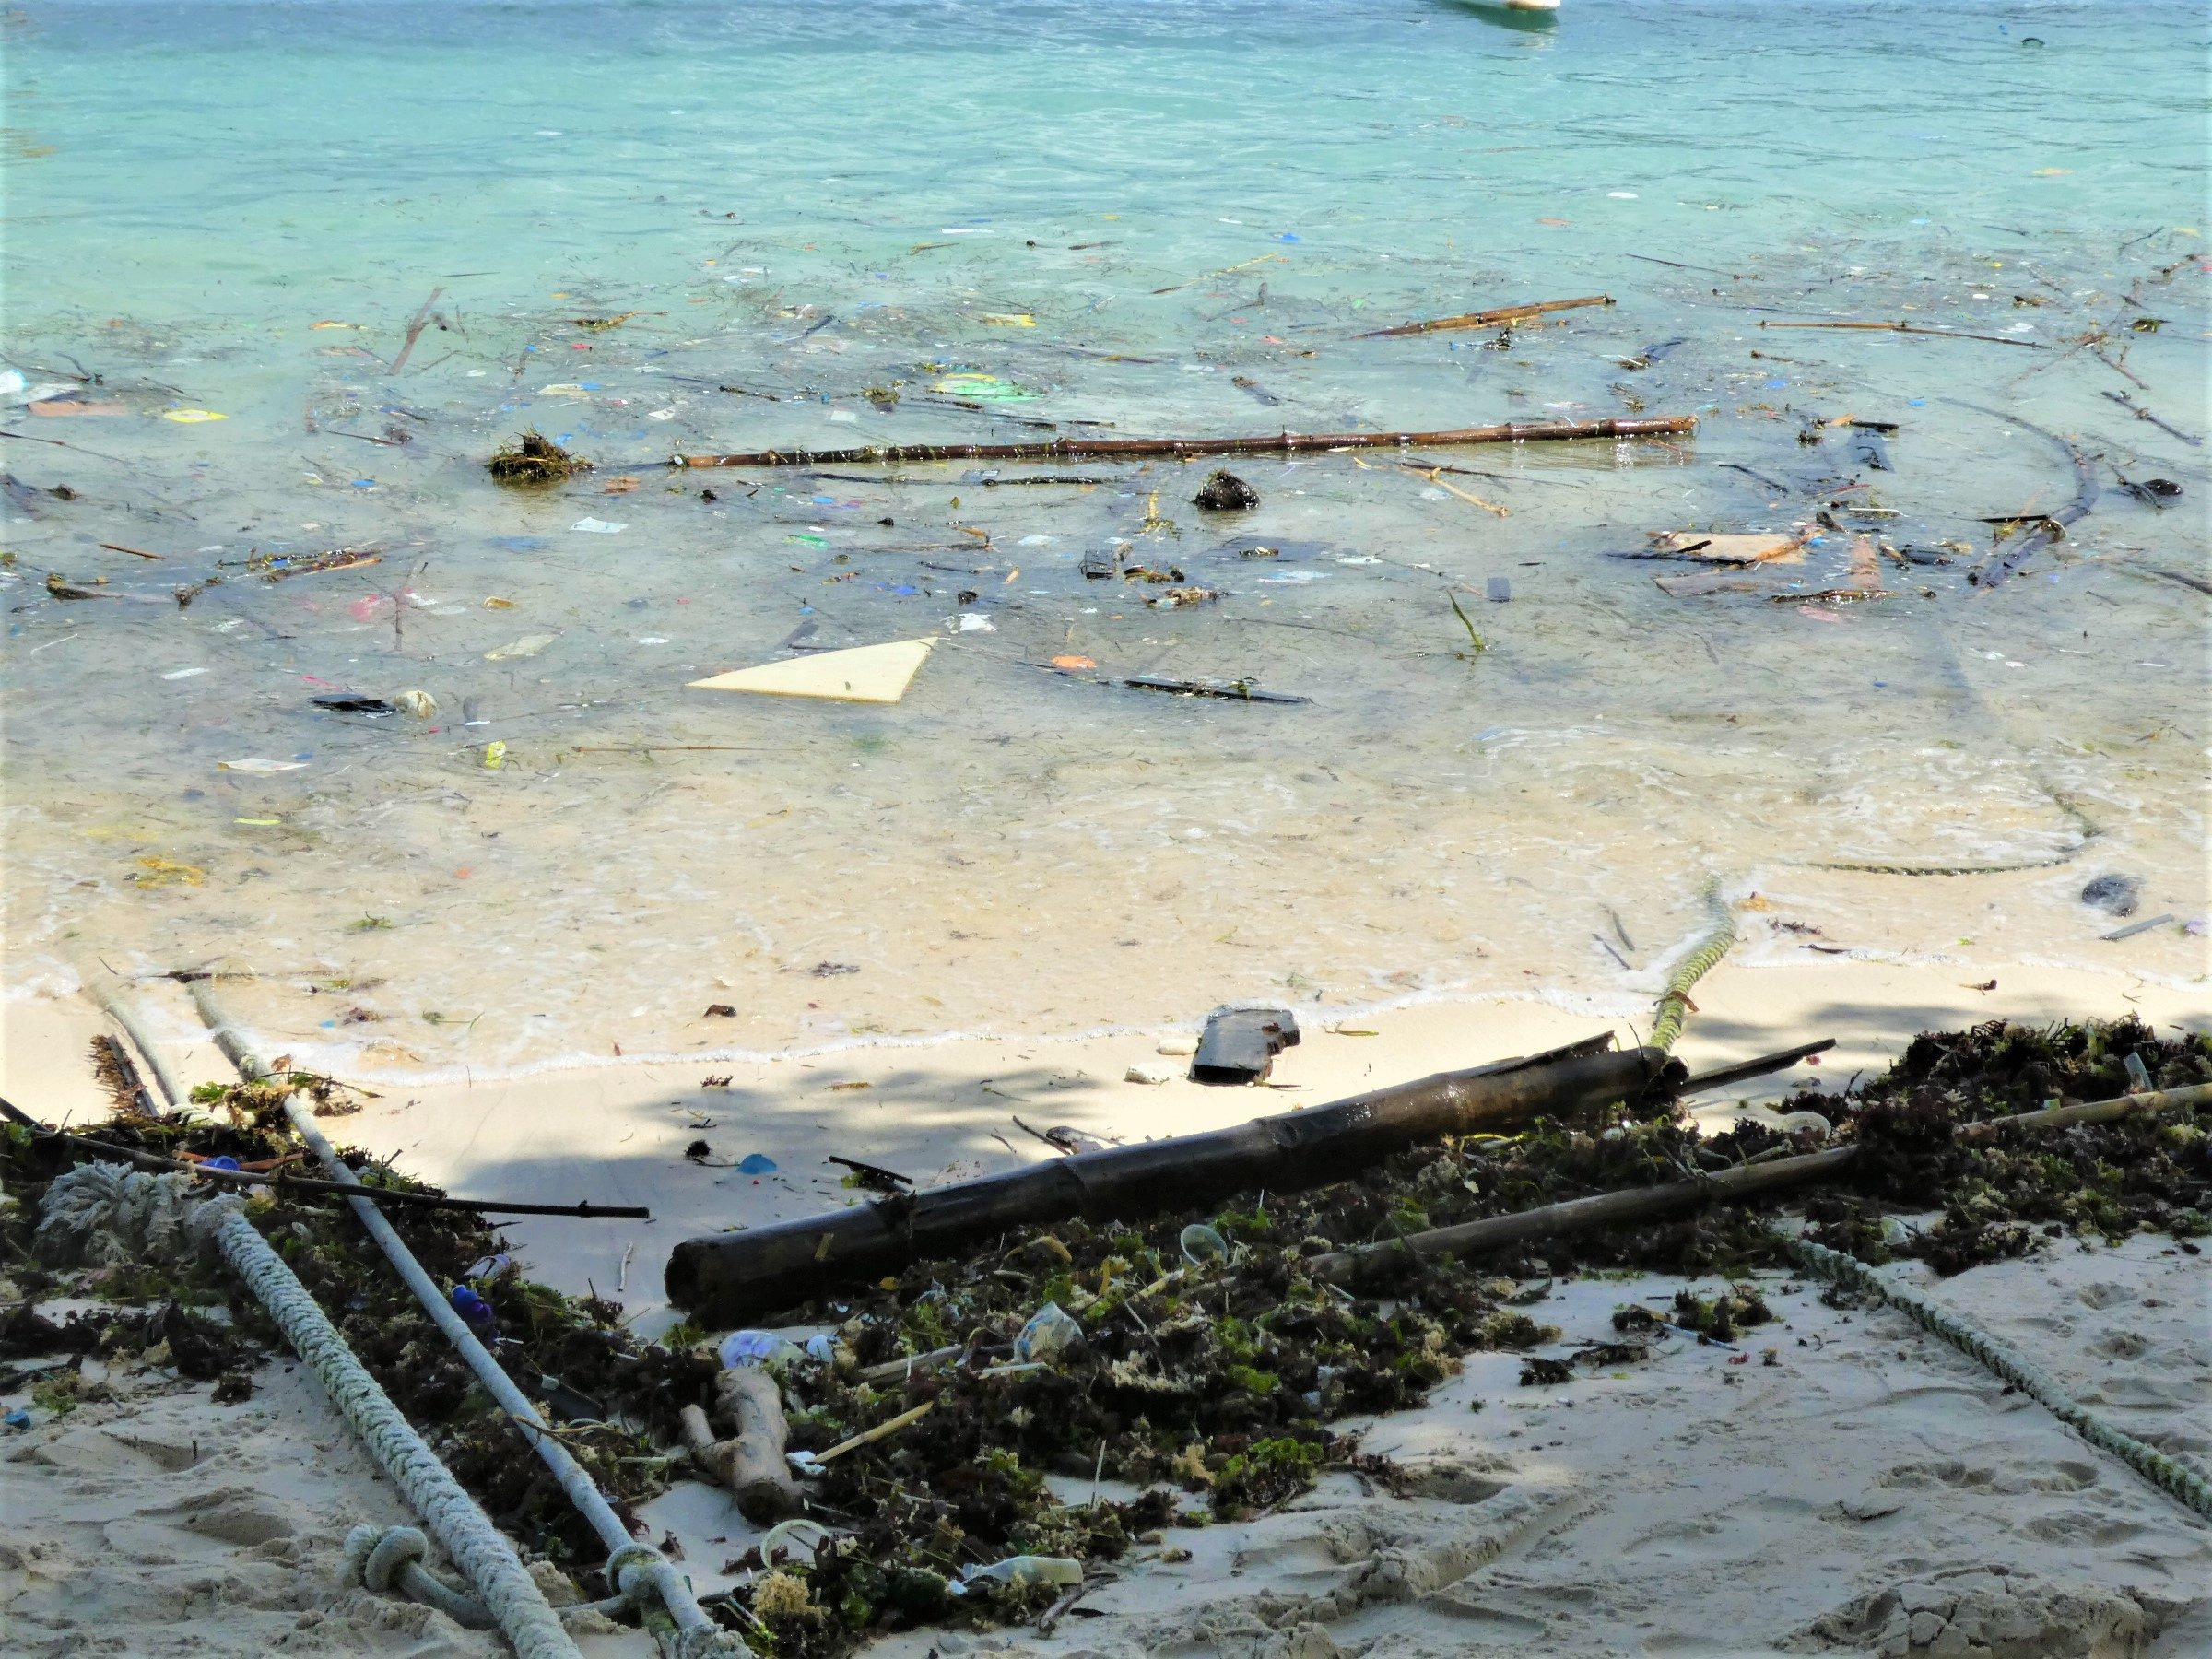 Trashed beach in Bali